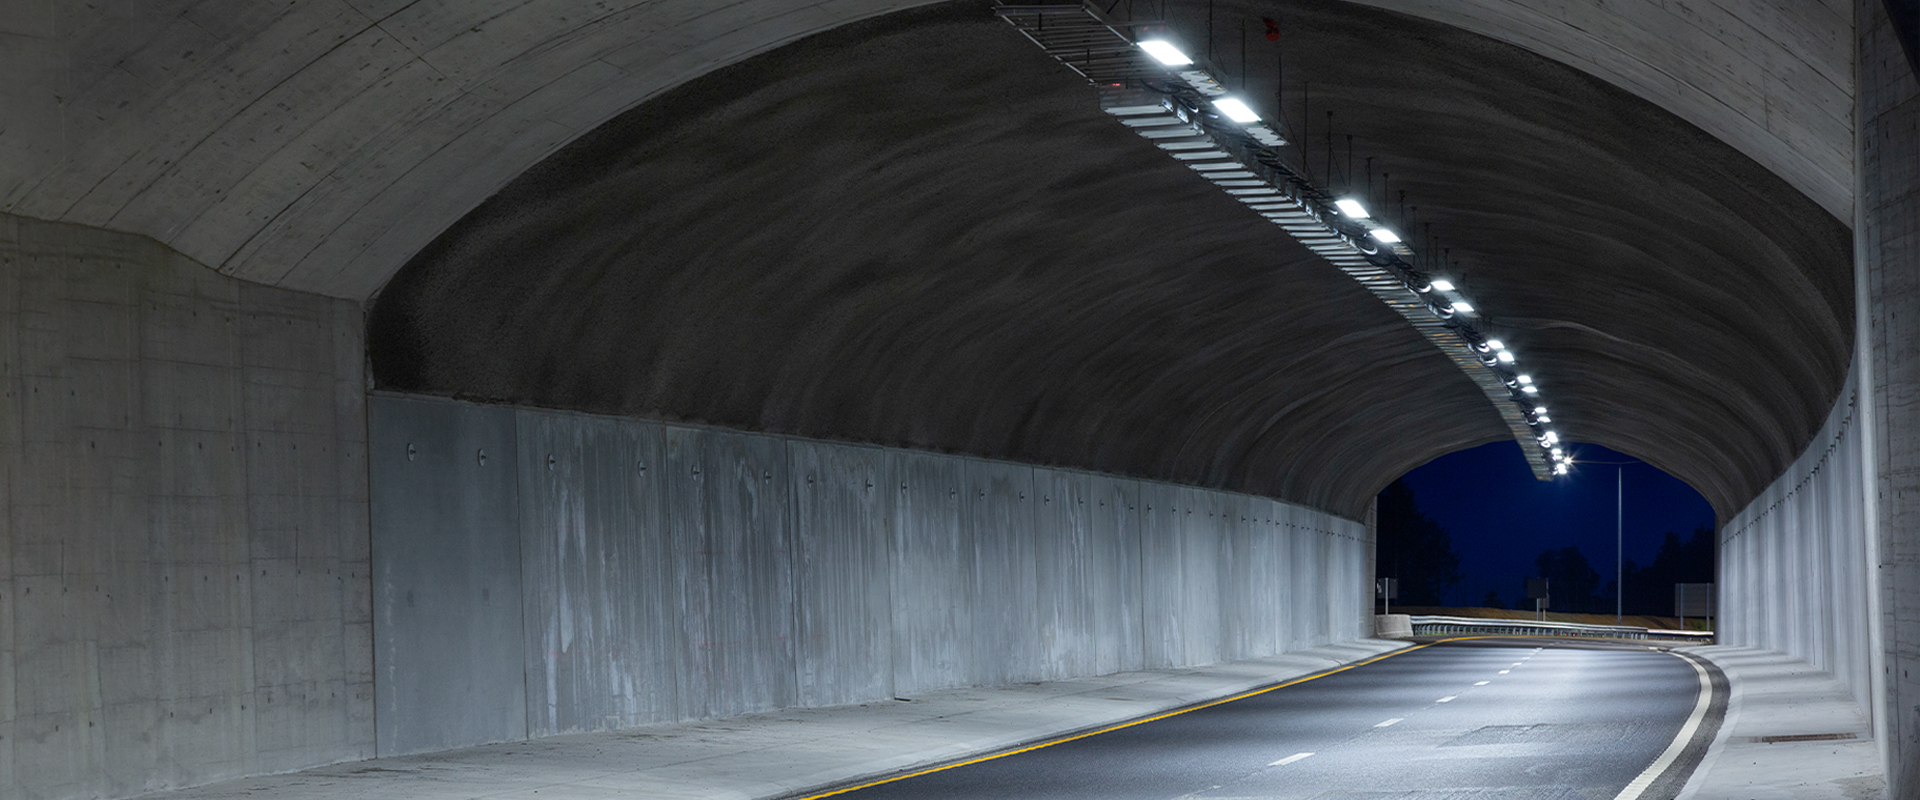 Projecteurs de tunnel routier